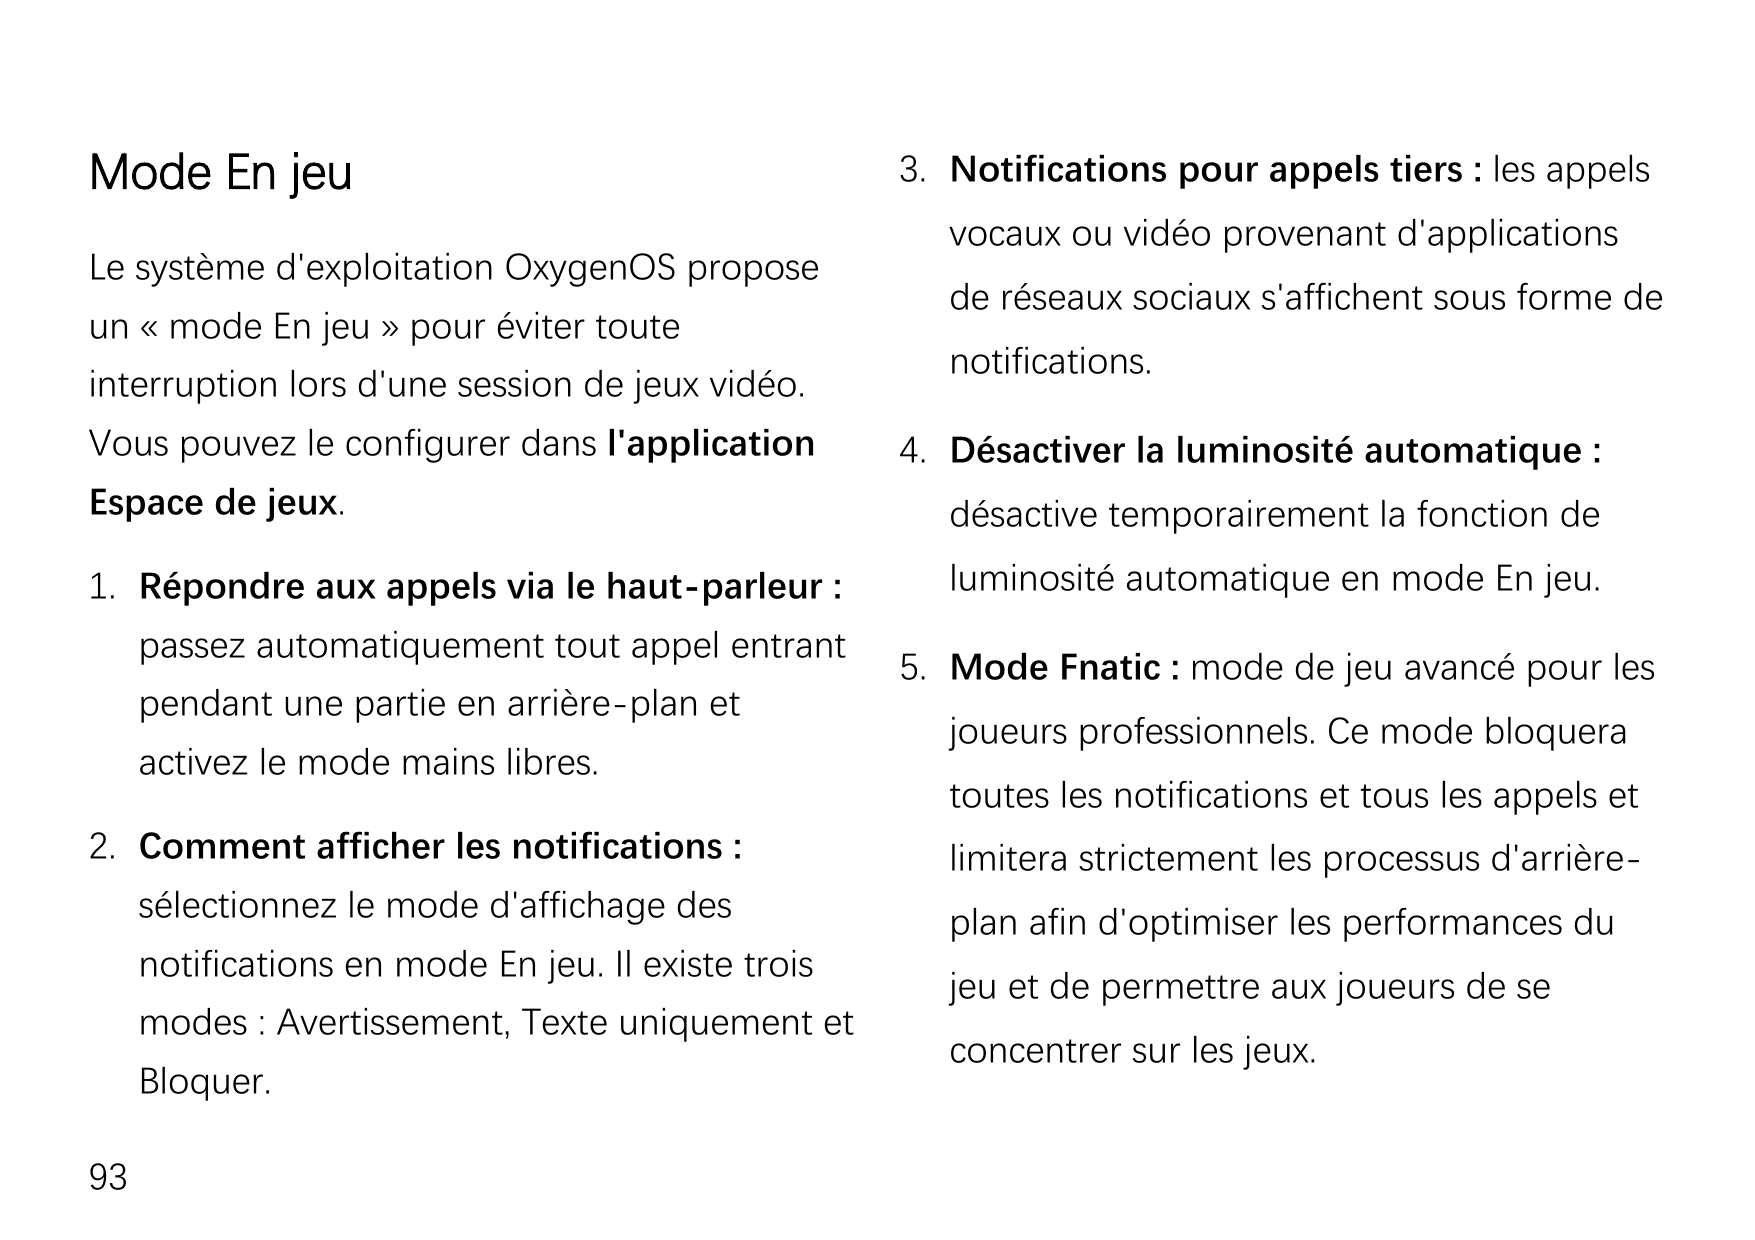 Mode En jeuLe système d'exploitation OxygenOS proposeun « mode En jeu » pour éviter touteinterruption lors d'une session de jeux